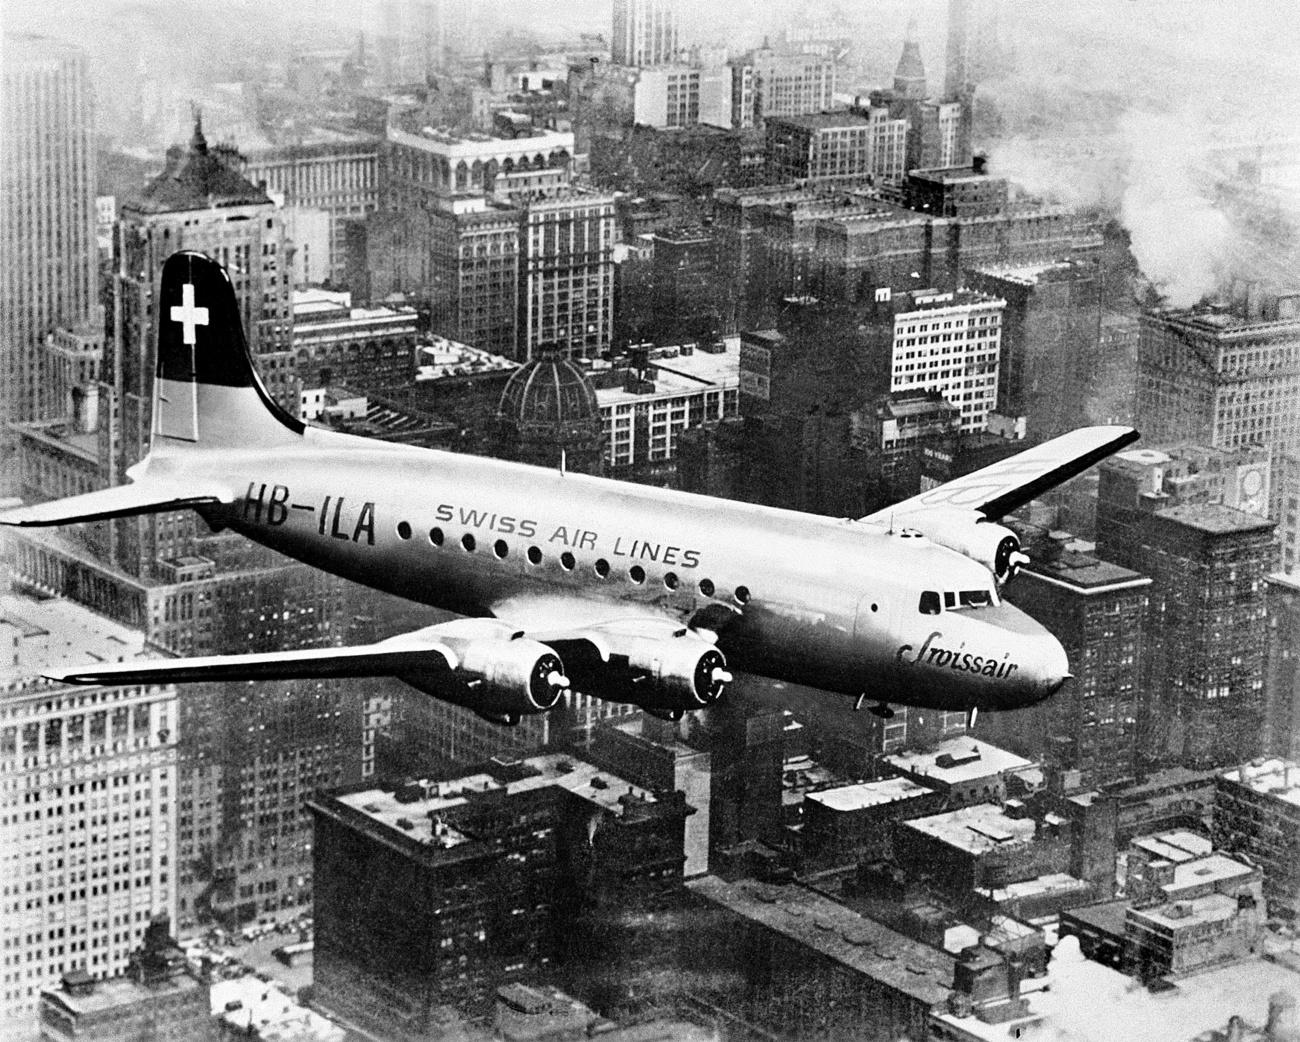 ニューヨークの上空を飛行するスイス航空DC-4機。ニューヨークとジュネーブ間をノンストップで結んだ。1947年